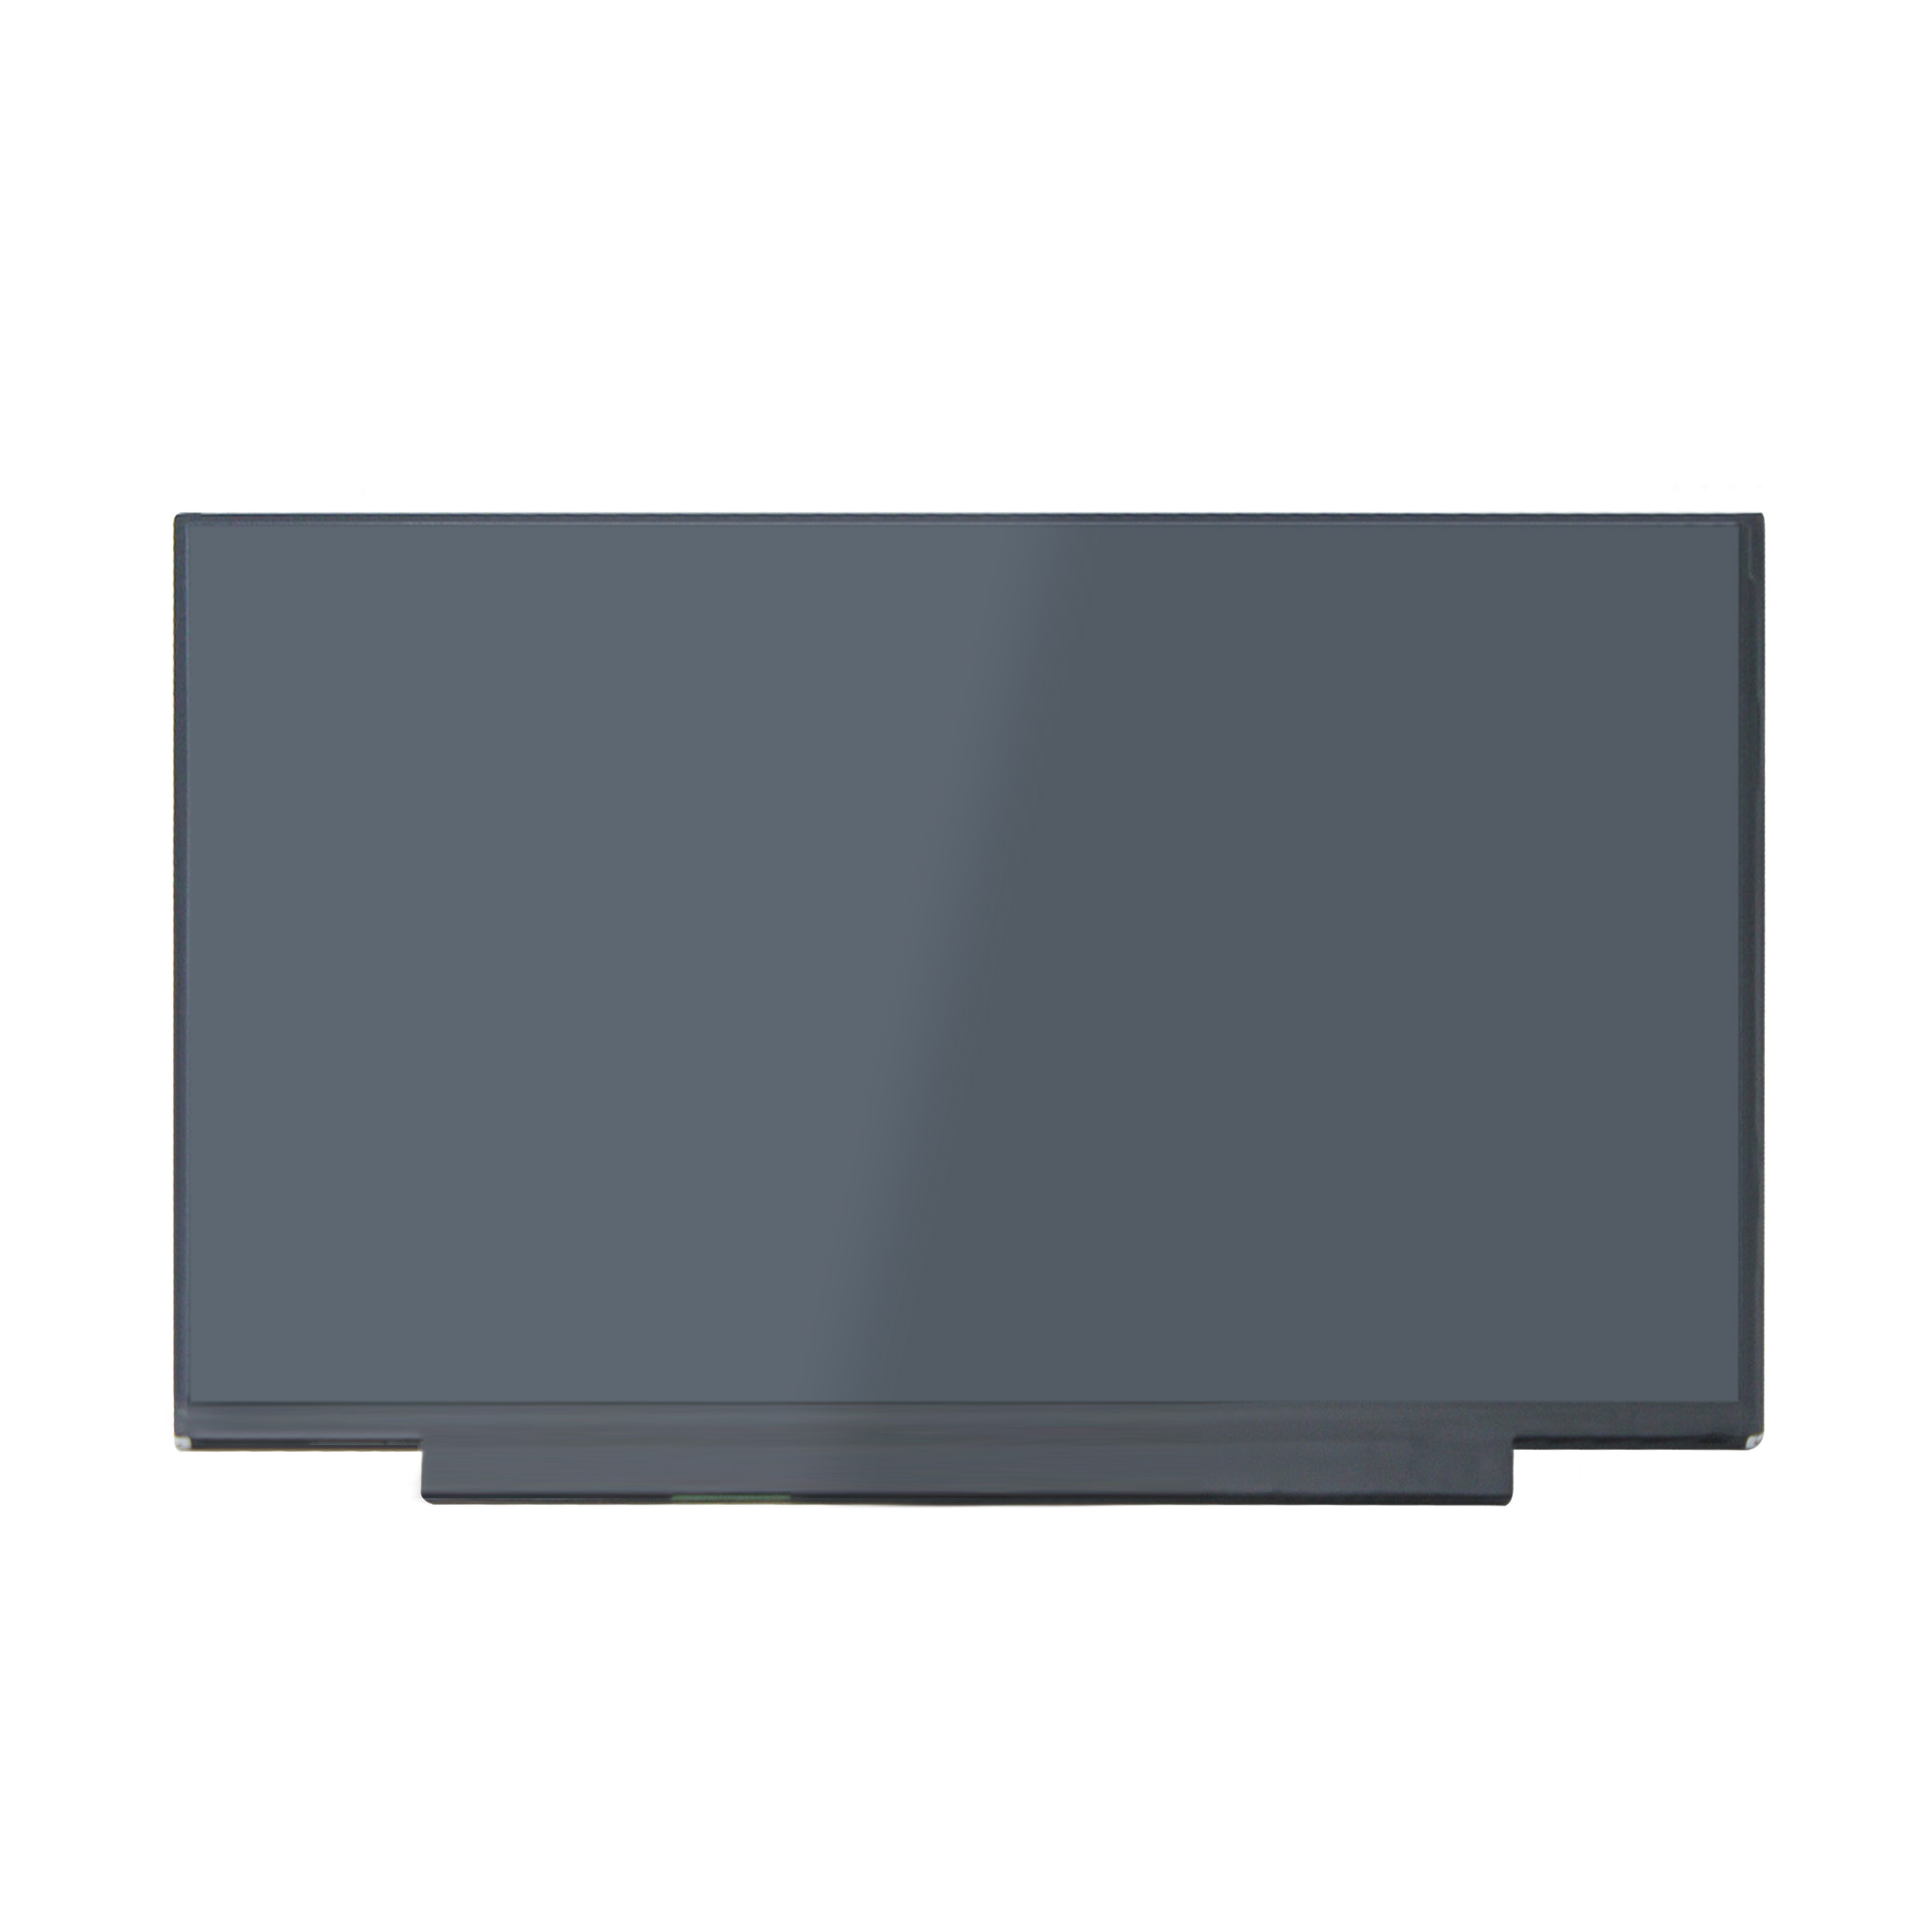 Yoothi 互換品 液晶 15.6インチ Lenovo IdeaPad Slim 550 550i 82LN 81YQ 81YK 82FG 対応 100% sRGB 60Hz 30ピン 1920x1080 FullHD IPS LED LCD 液晶ディスプレイ 修理交換用液晶パネル